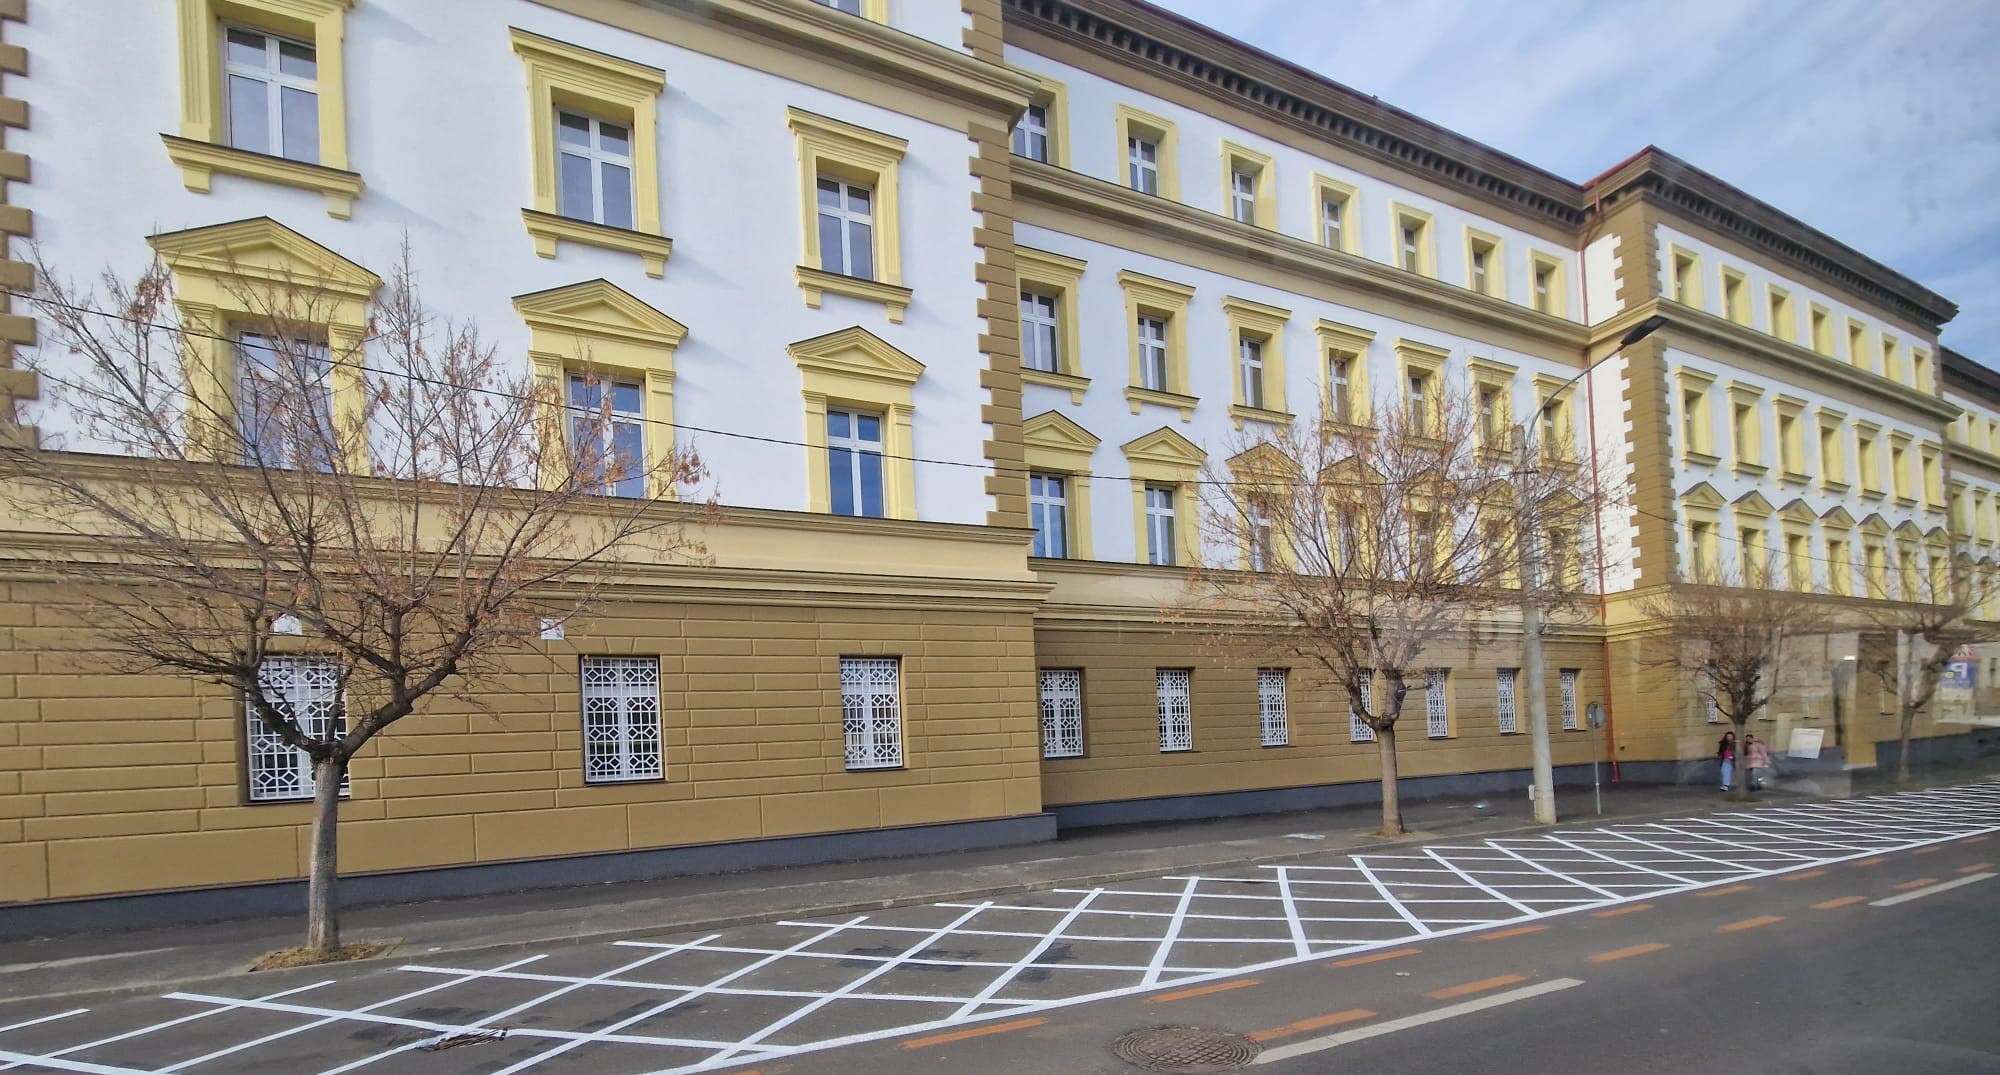 Poliția Rutieră Sibiu a amendat firmele angajate să refacă marcajul din zona Comandamentului NATO și obligă Primăria Sibiu să-l șteargă